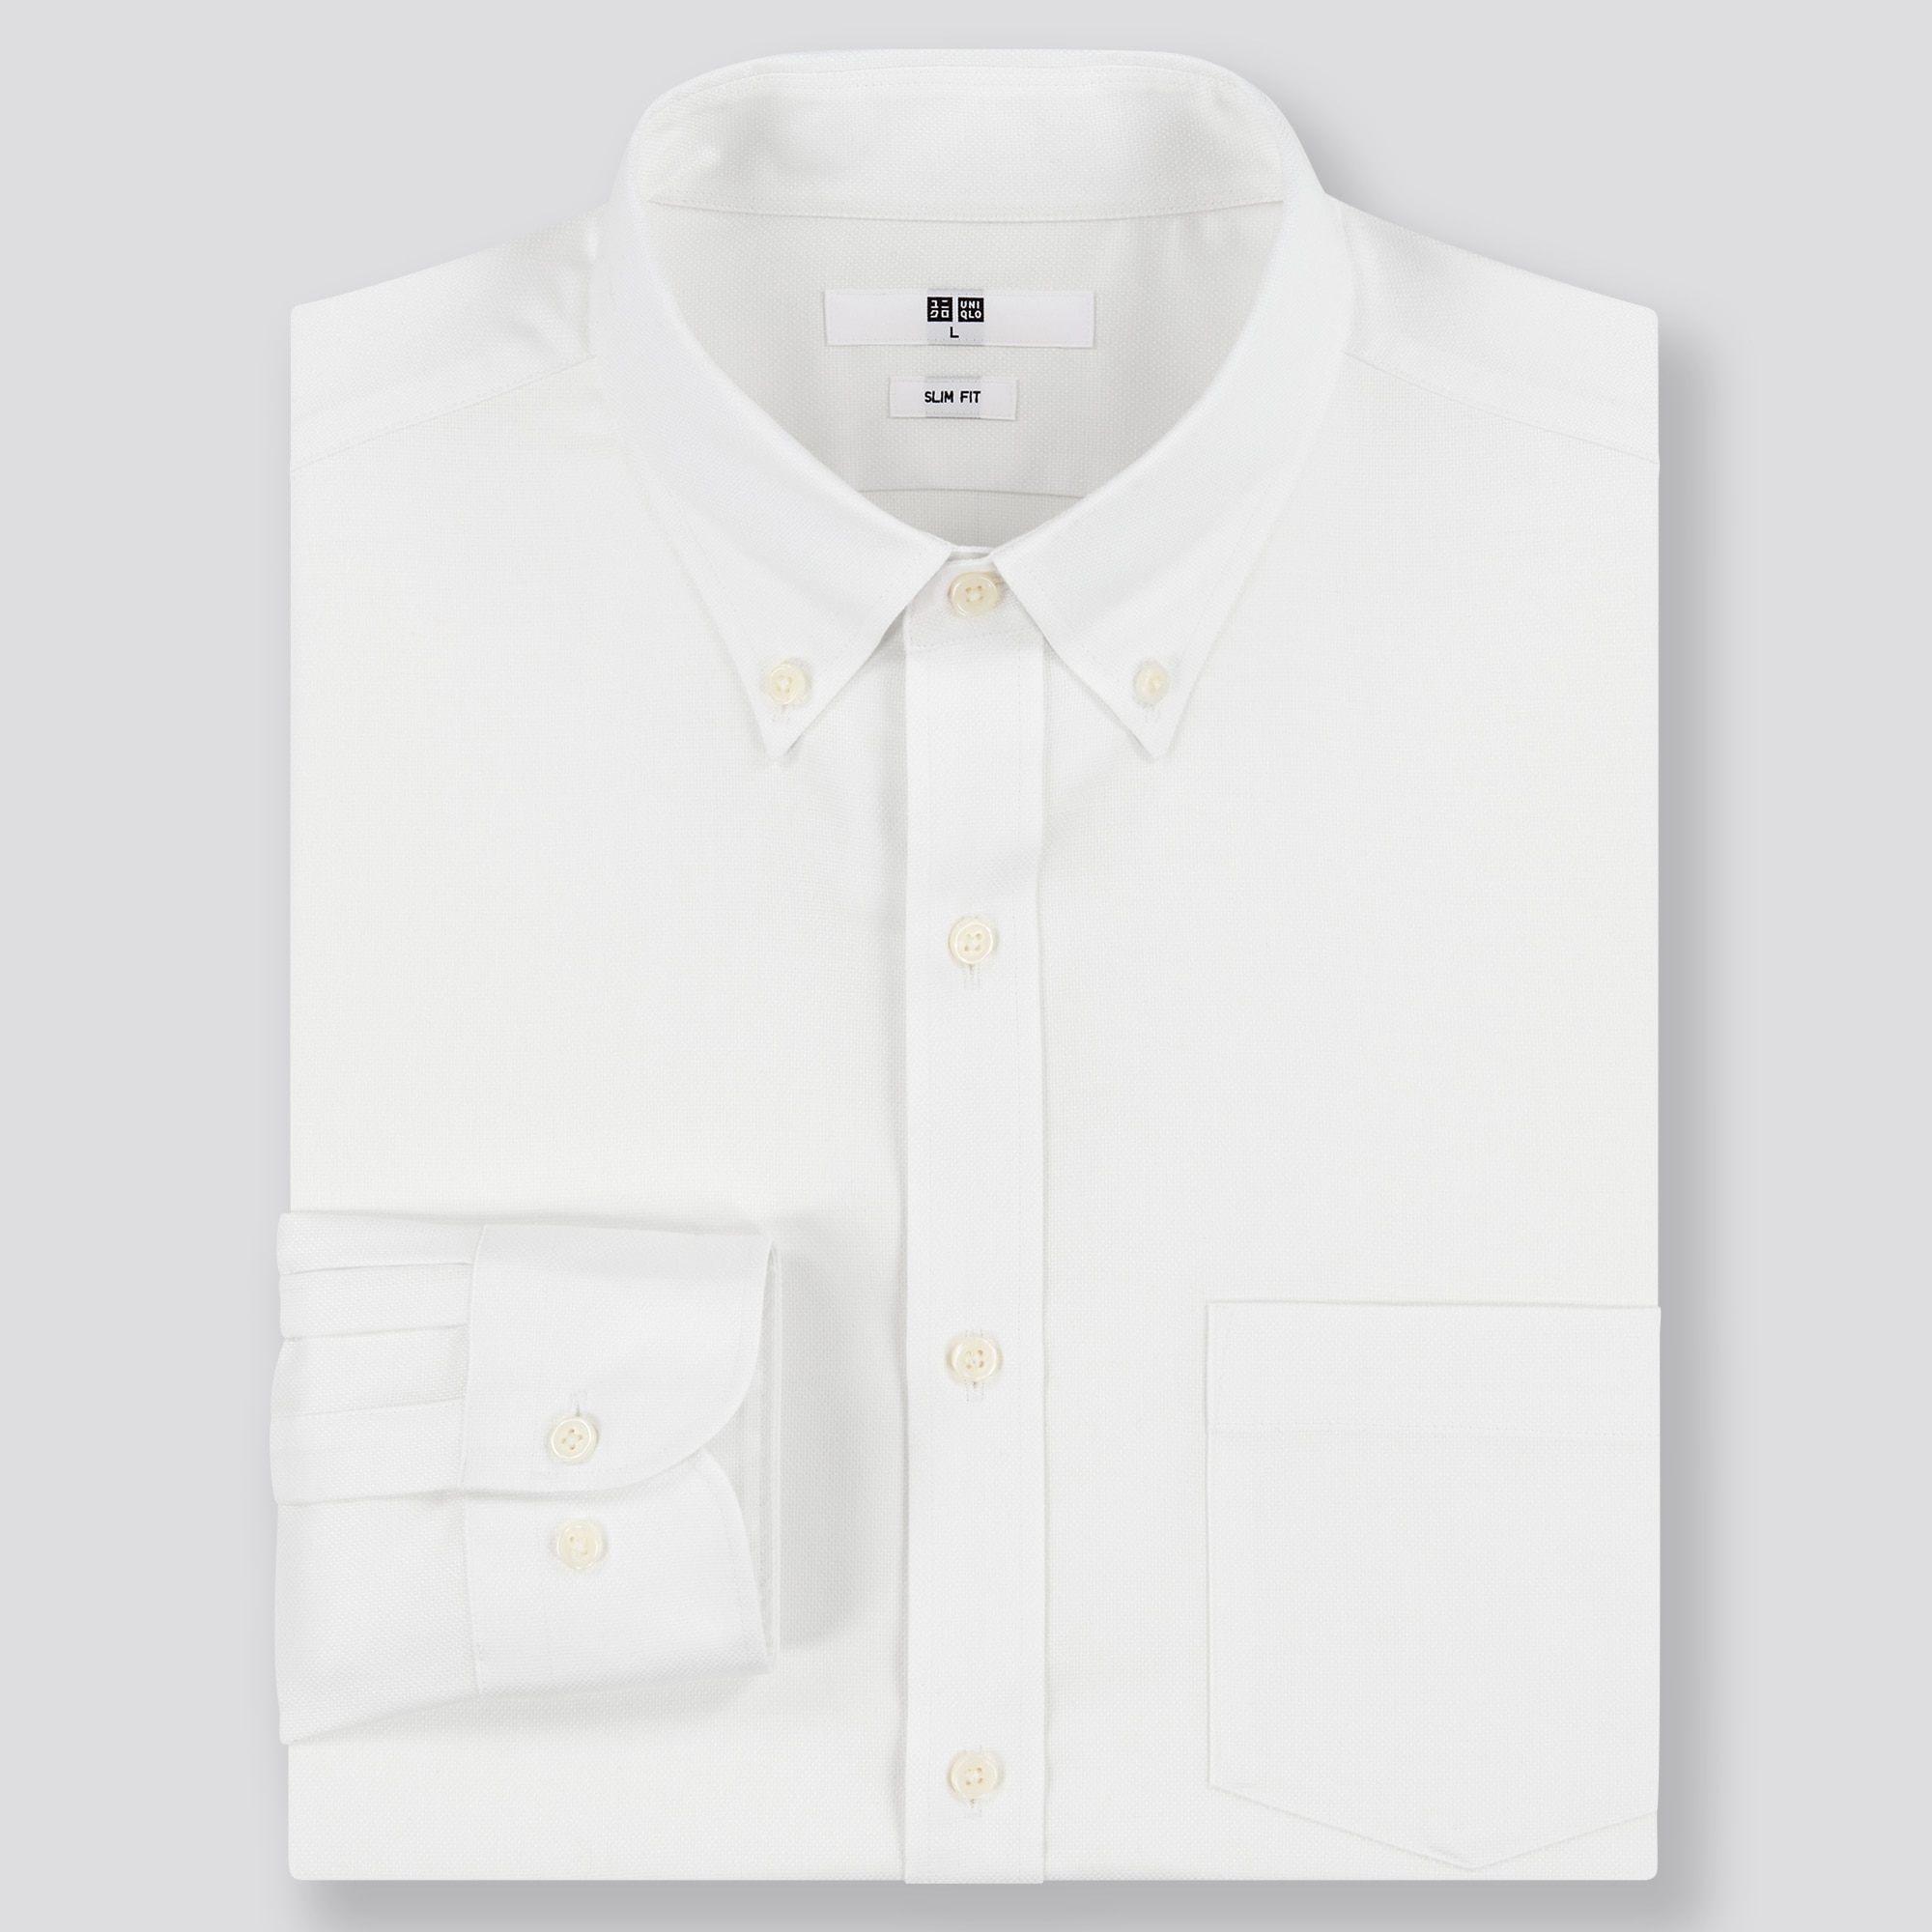 白シャツ メンズの関連商品 ユニクロ